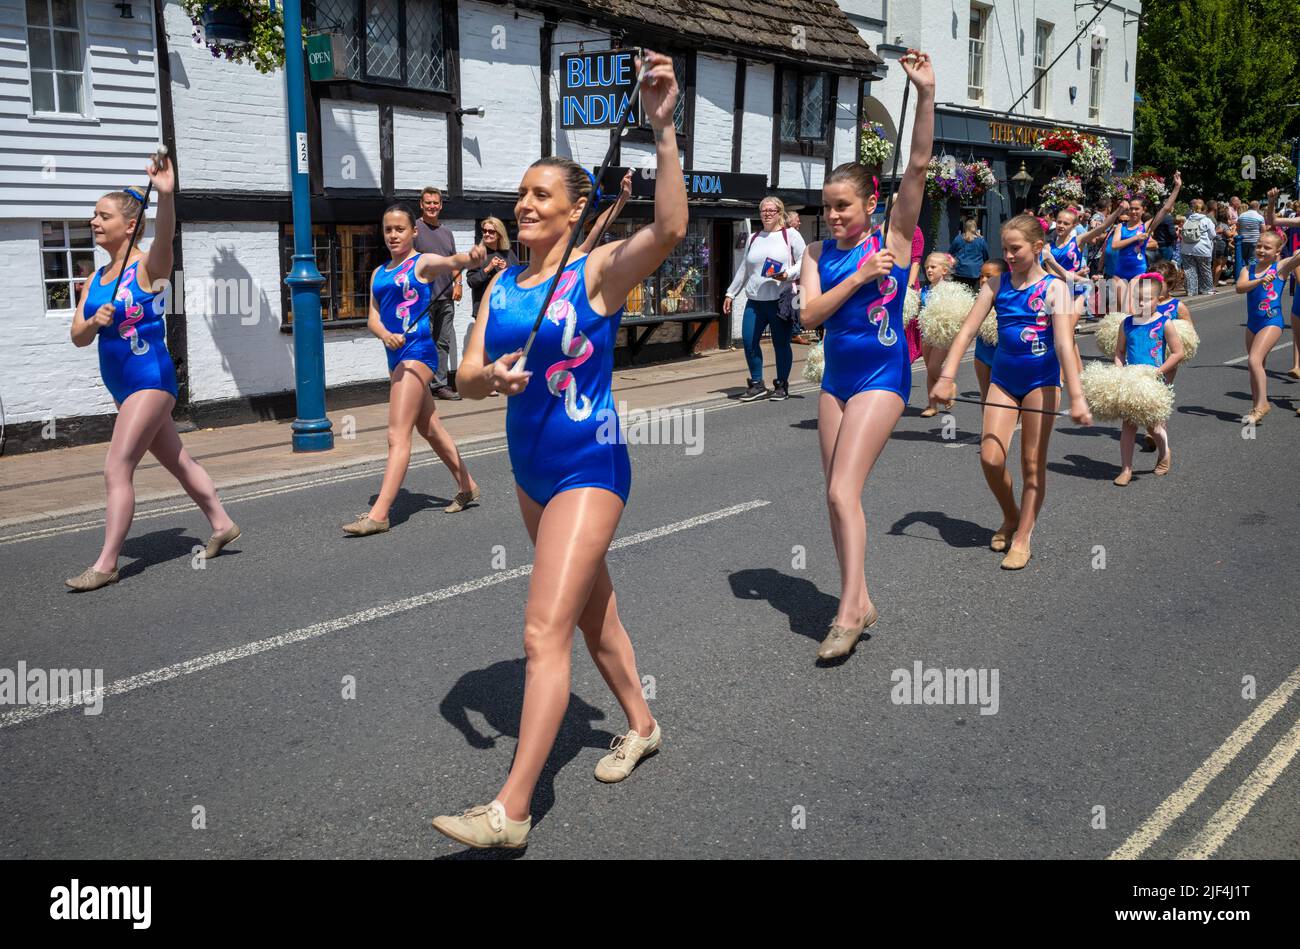 The Horsham Bluebelles Baton Twirlers parade through Billingshurst High Street as part of the annual Billingshurst Show. Stock Photo